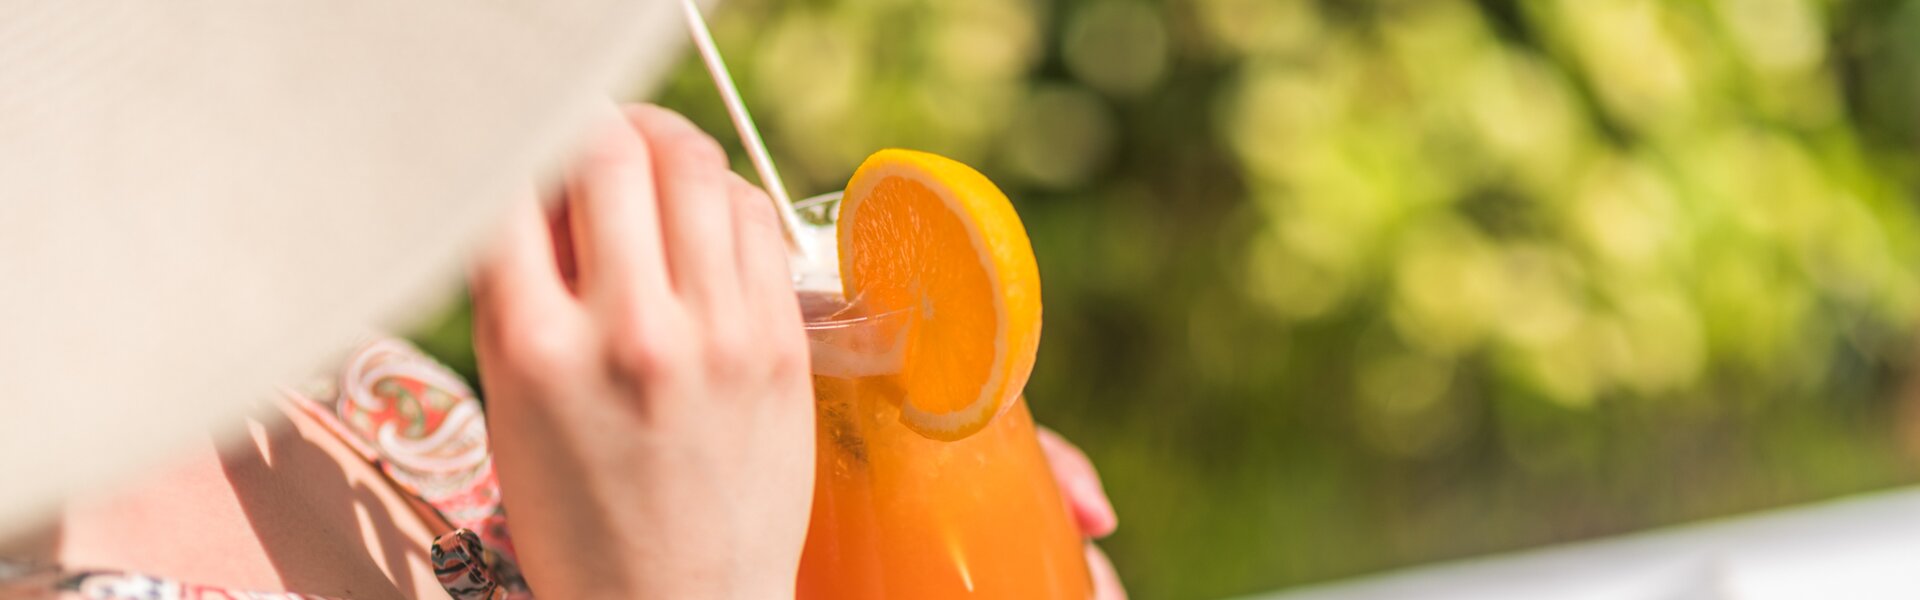 Detailaufnahme eines orangefarbenen Cocktails in der Hand einer Frau, die im Grünen sitzt.